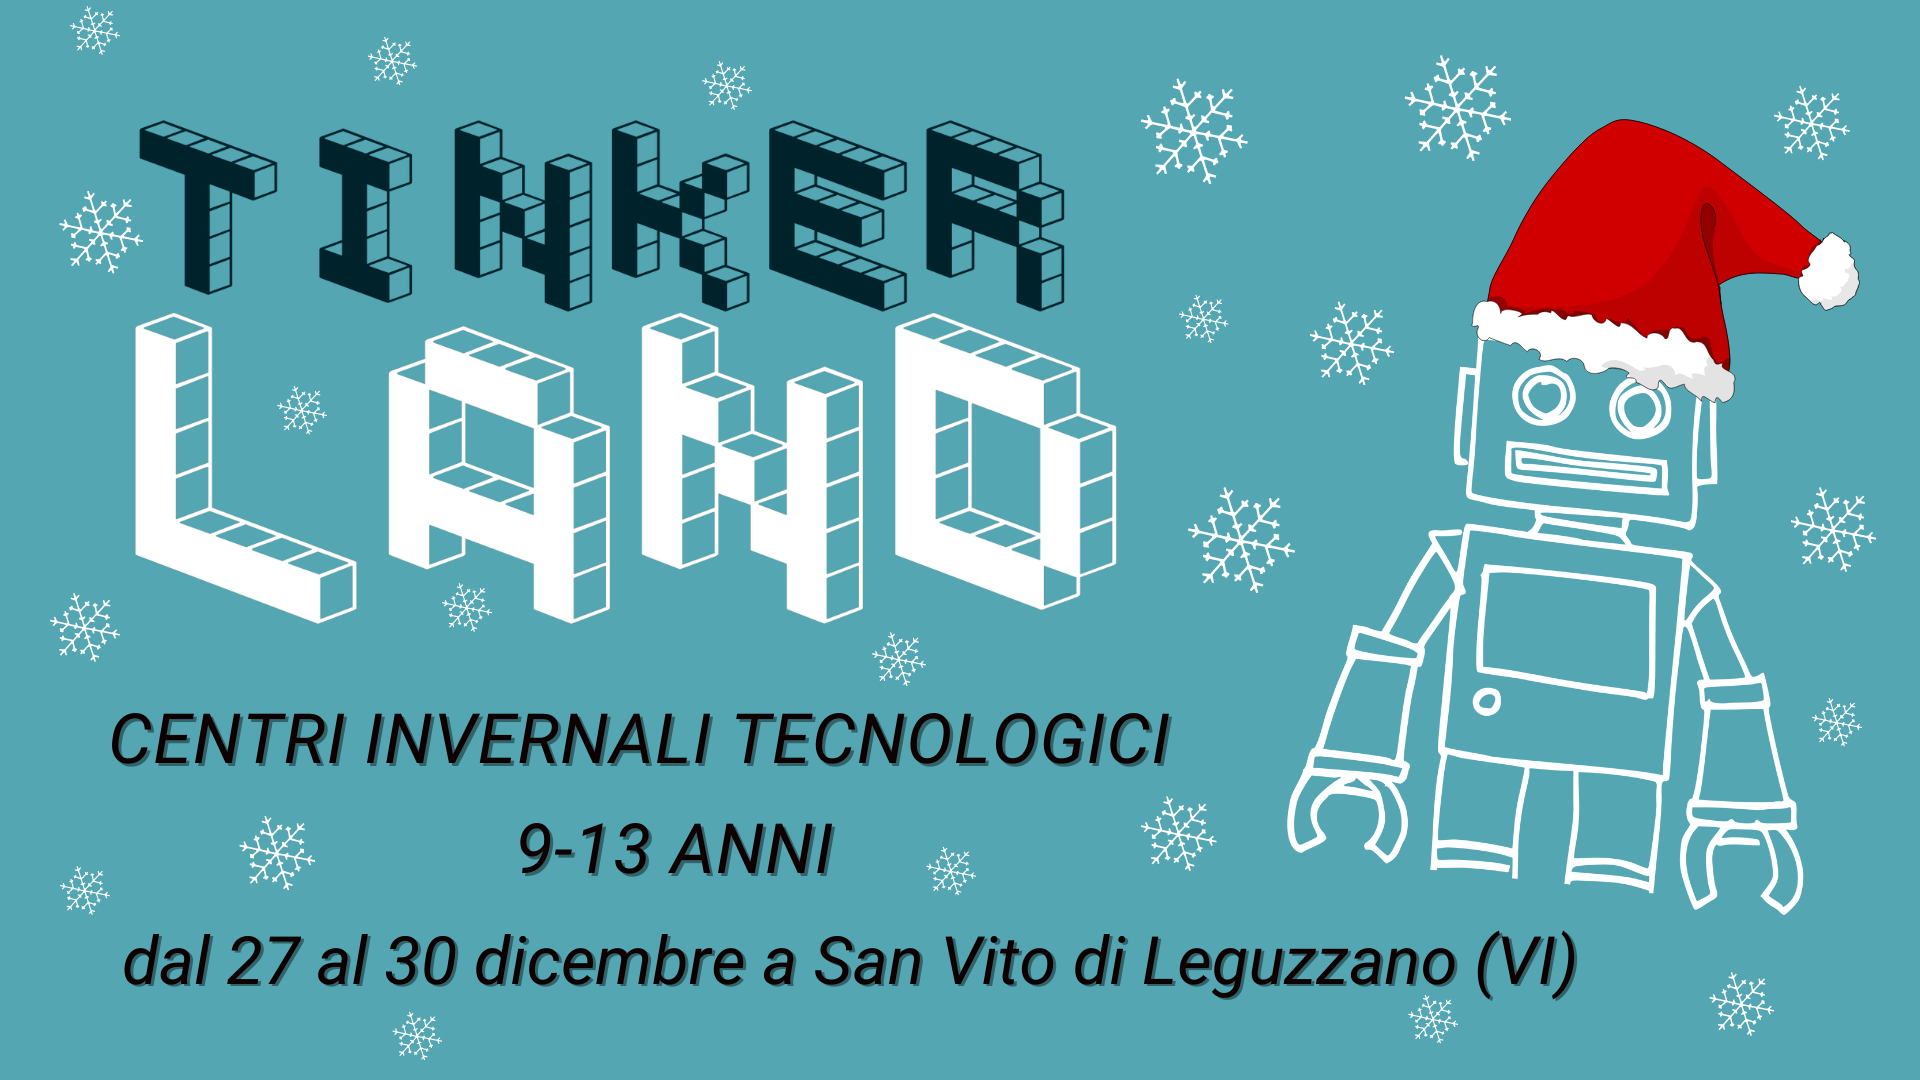 Tinkerland, centri invernali tecnologici a San Vito di Leguzzano (VI)